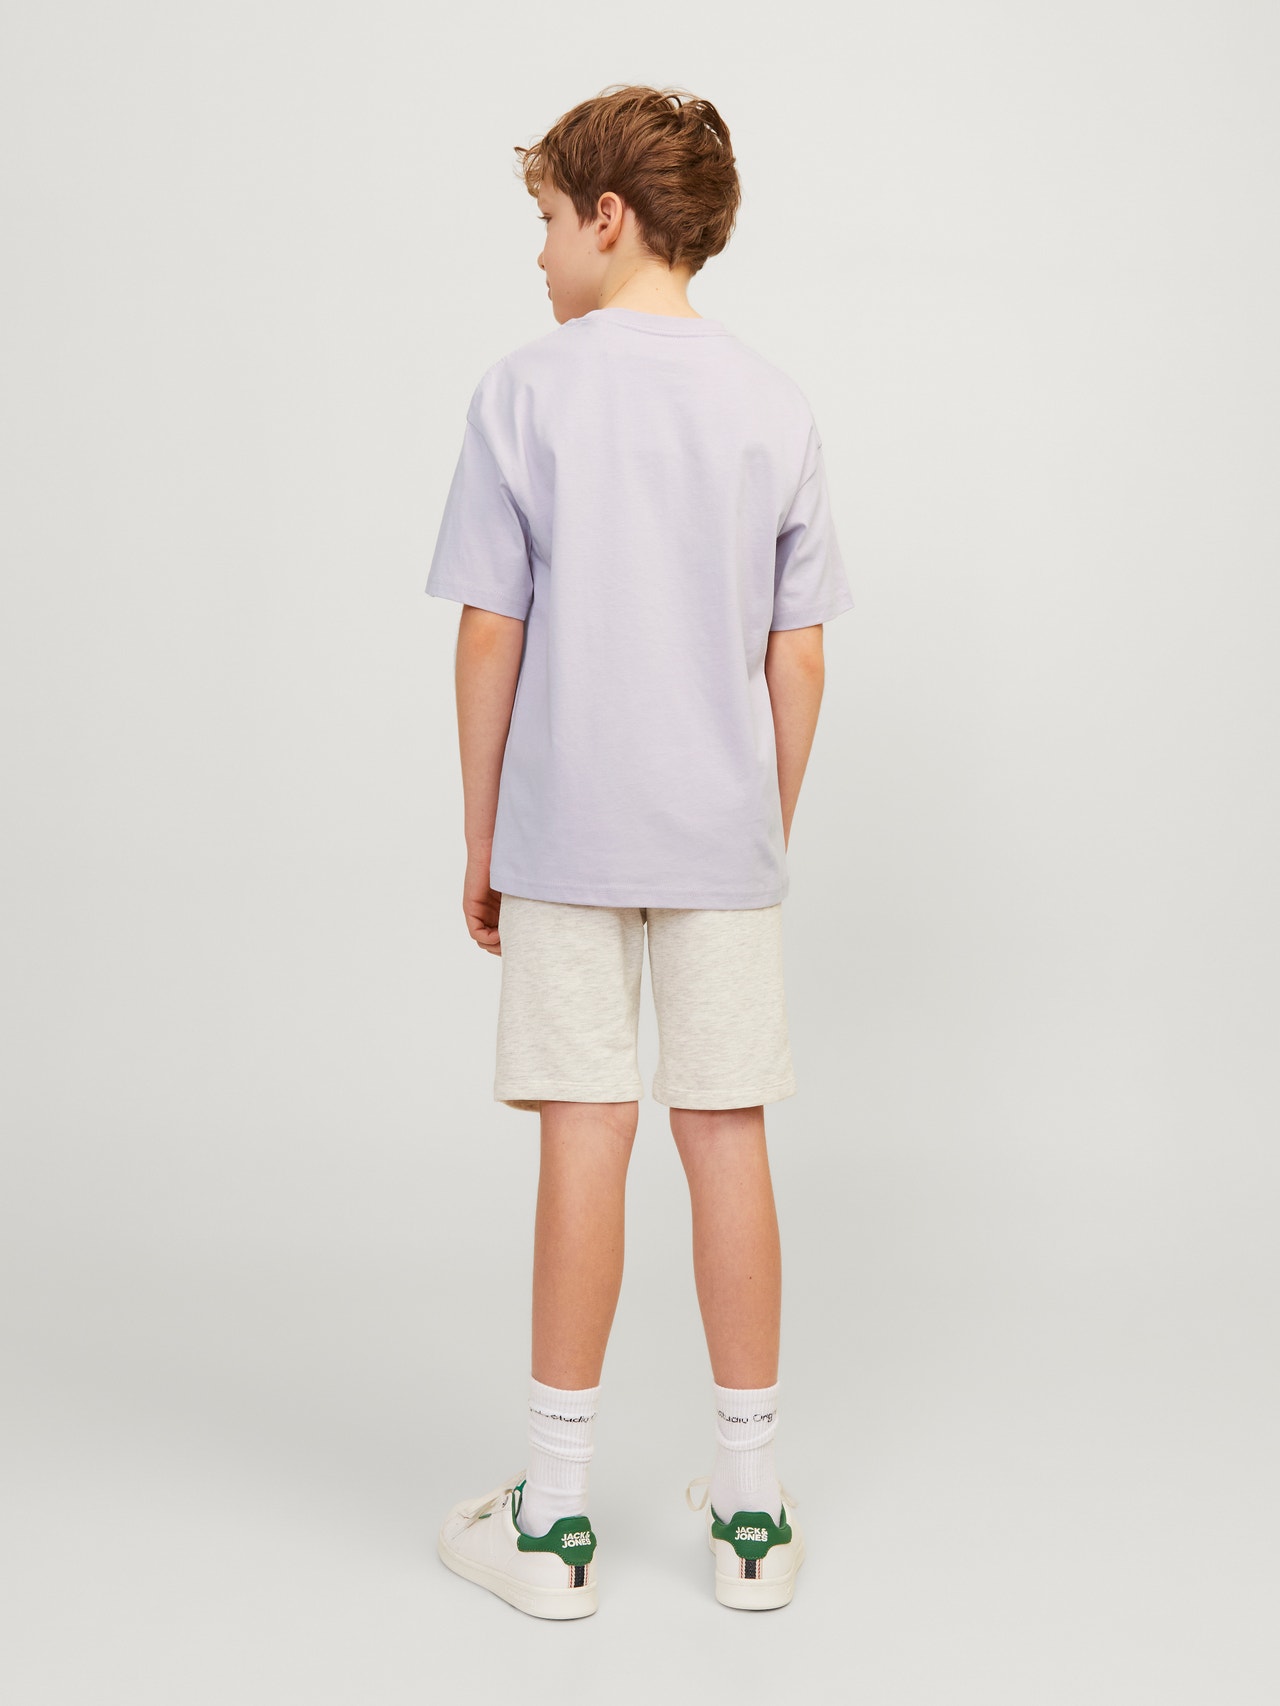 Jack & Jones T-shirt Estampar Para meninos -Lavender Frost - 12242827